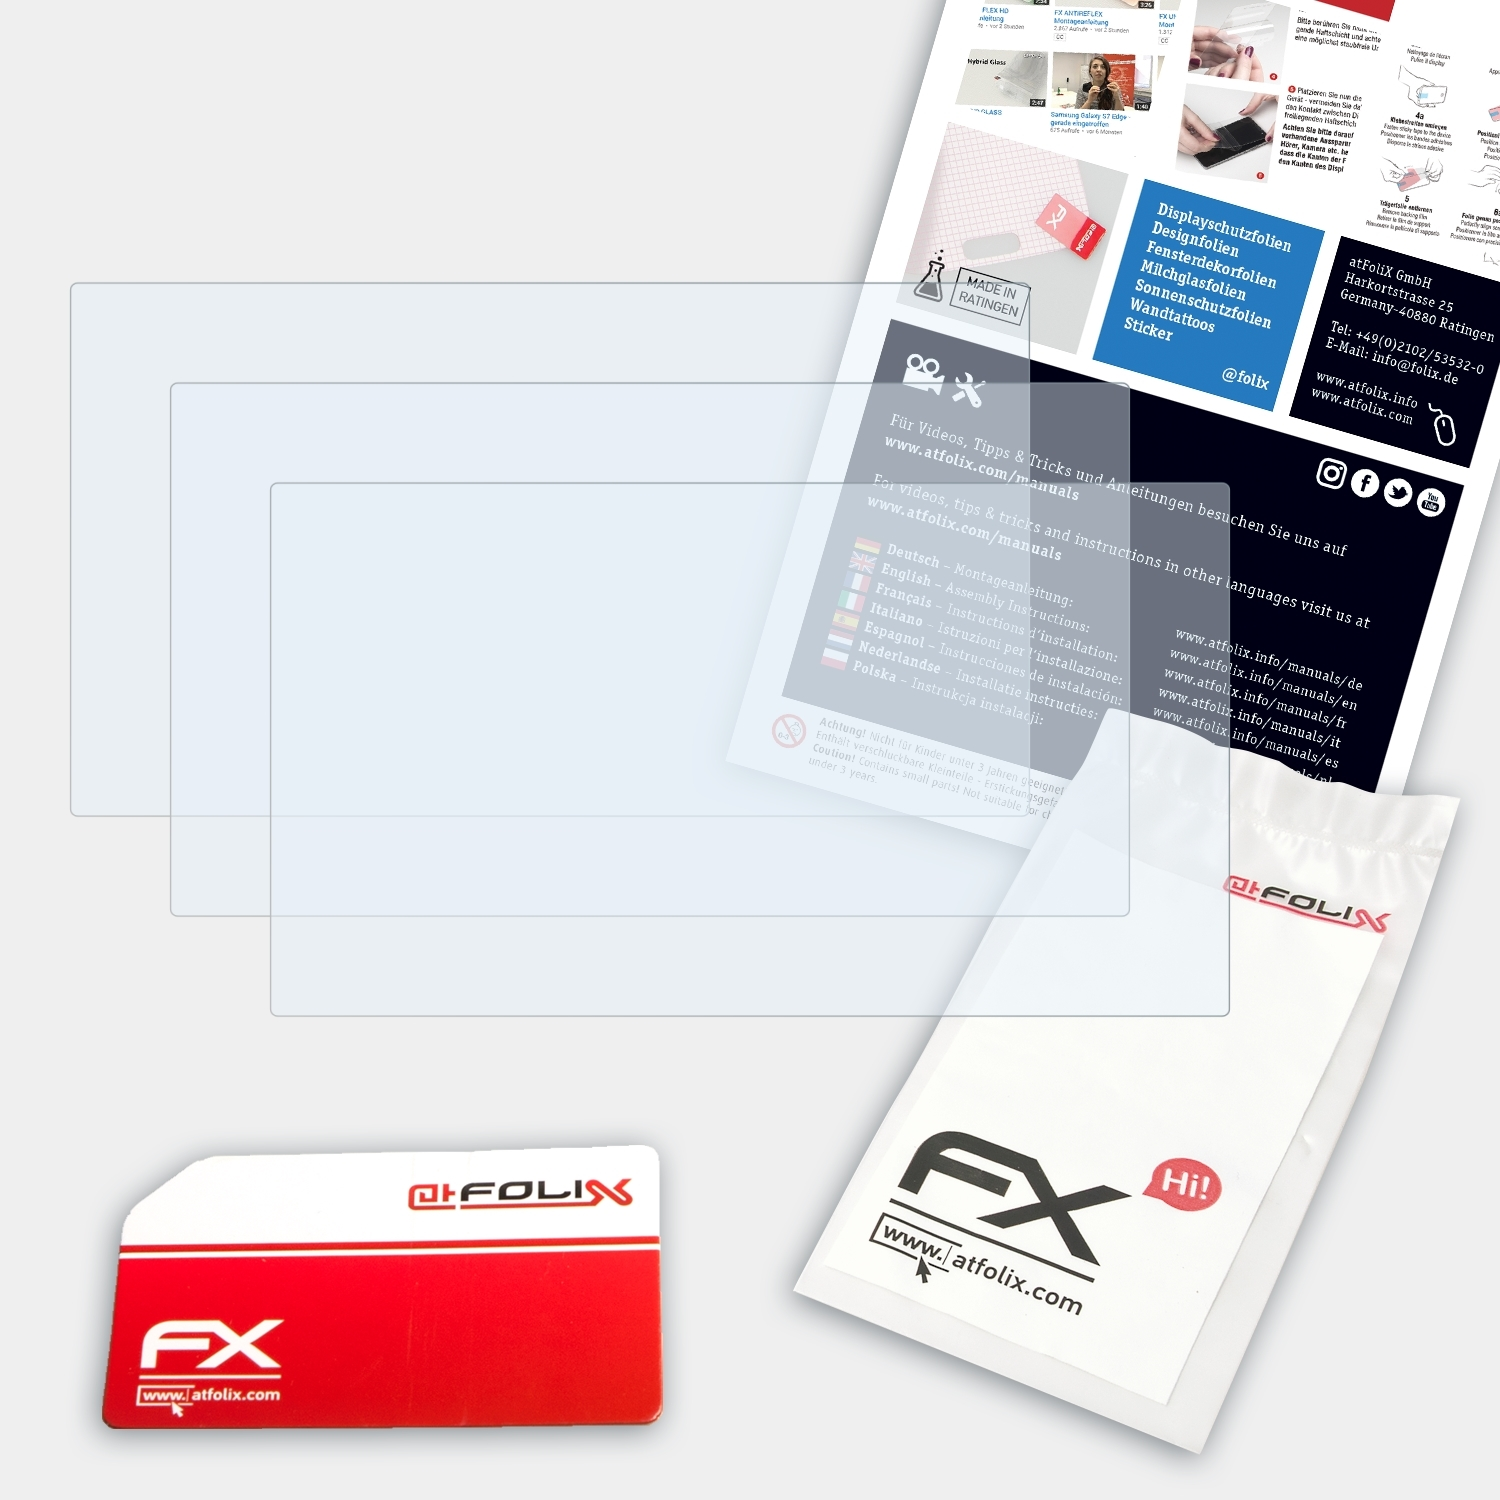 ATFOLIX 3x FX-Clear Displayschutz(für Sony HDR-PJ410)